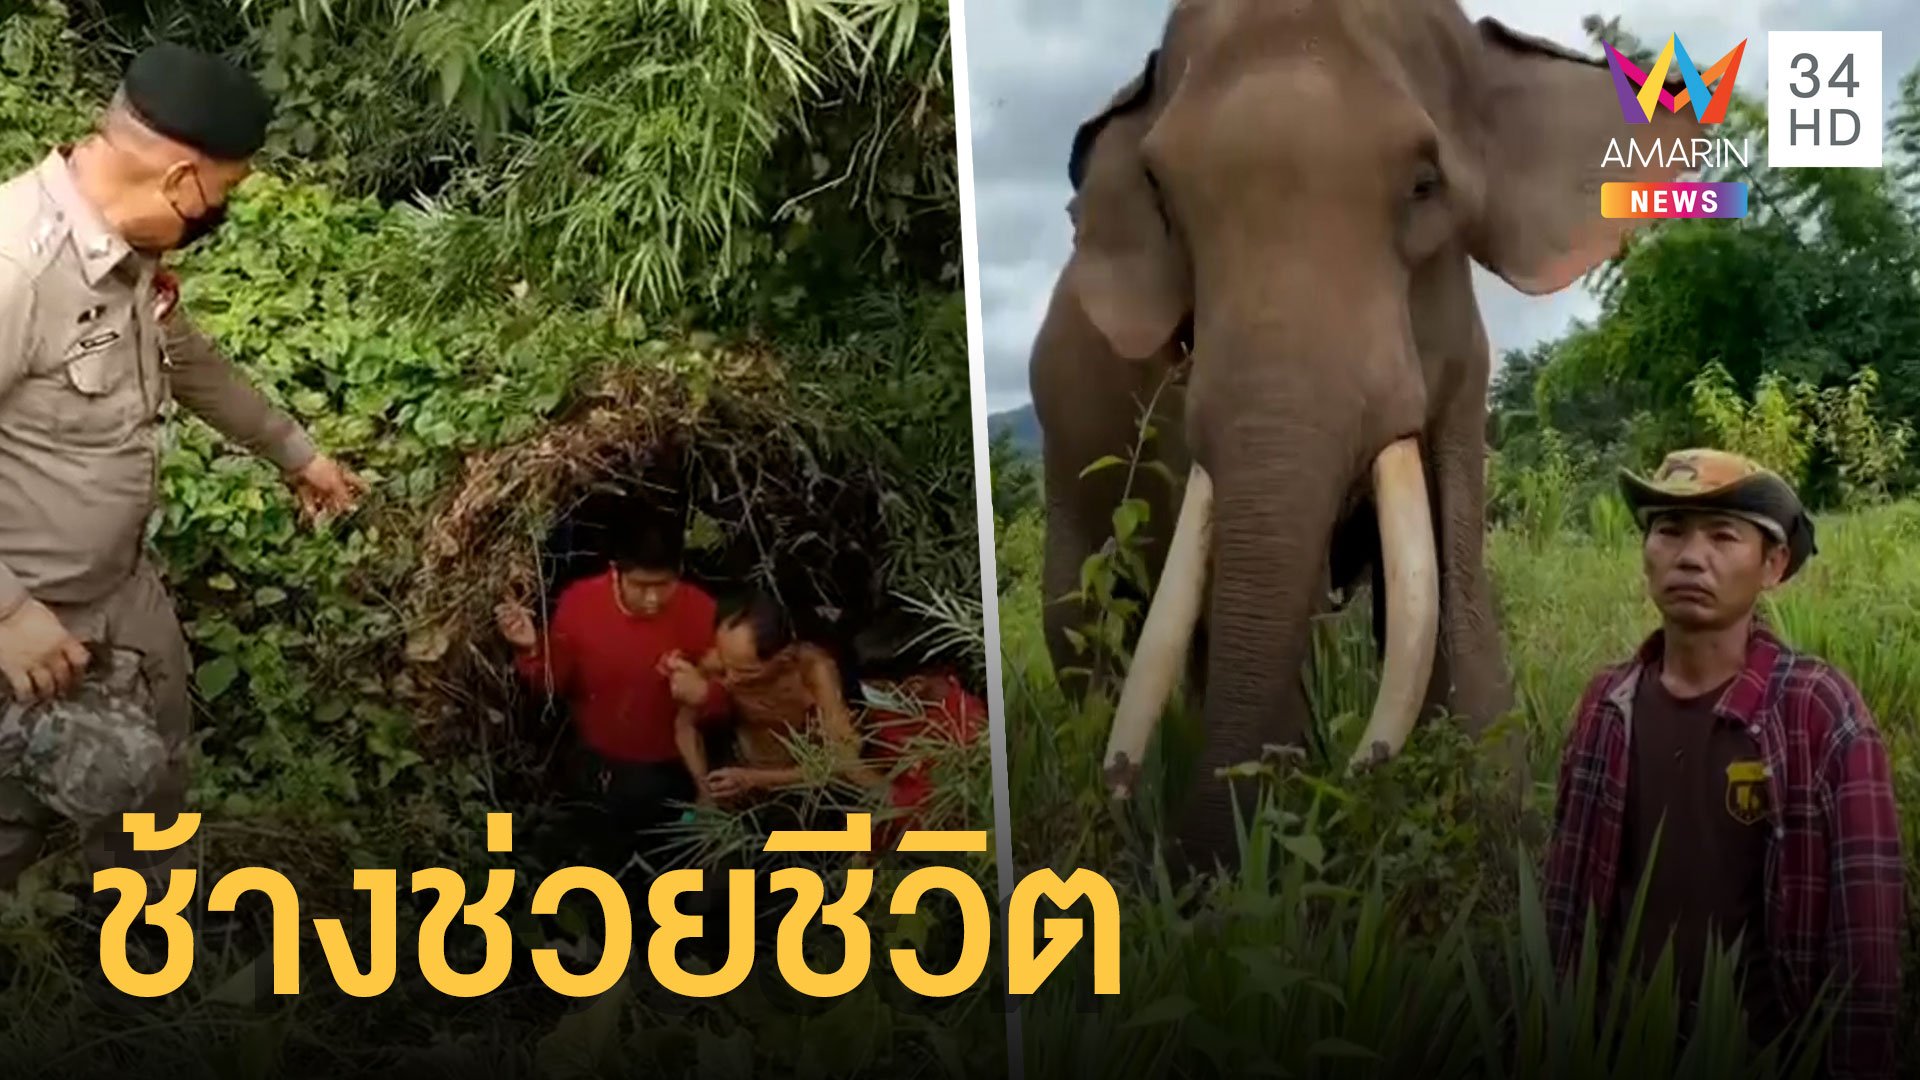 ลุงหลงป่า 17 วัน เจอตัวเพราะช้าง | ข่าวอรุณอมรินทร์ | 29 ก.ค. 64 | AMARIN TVHD34